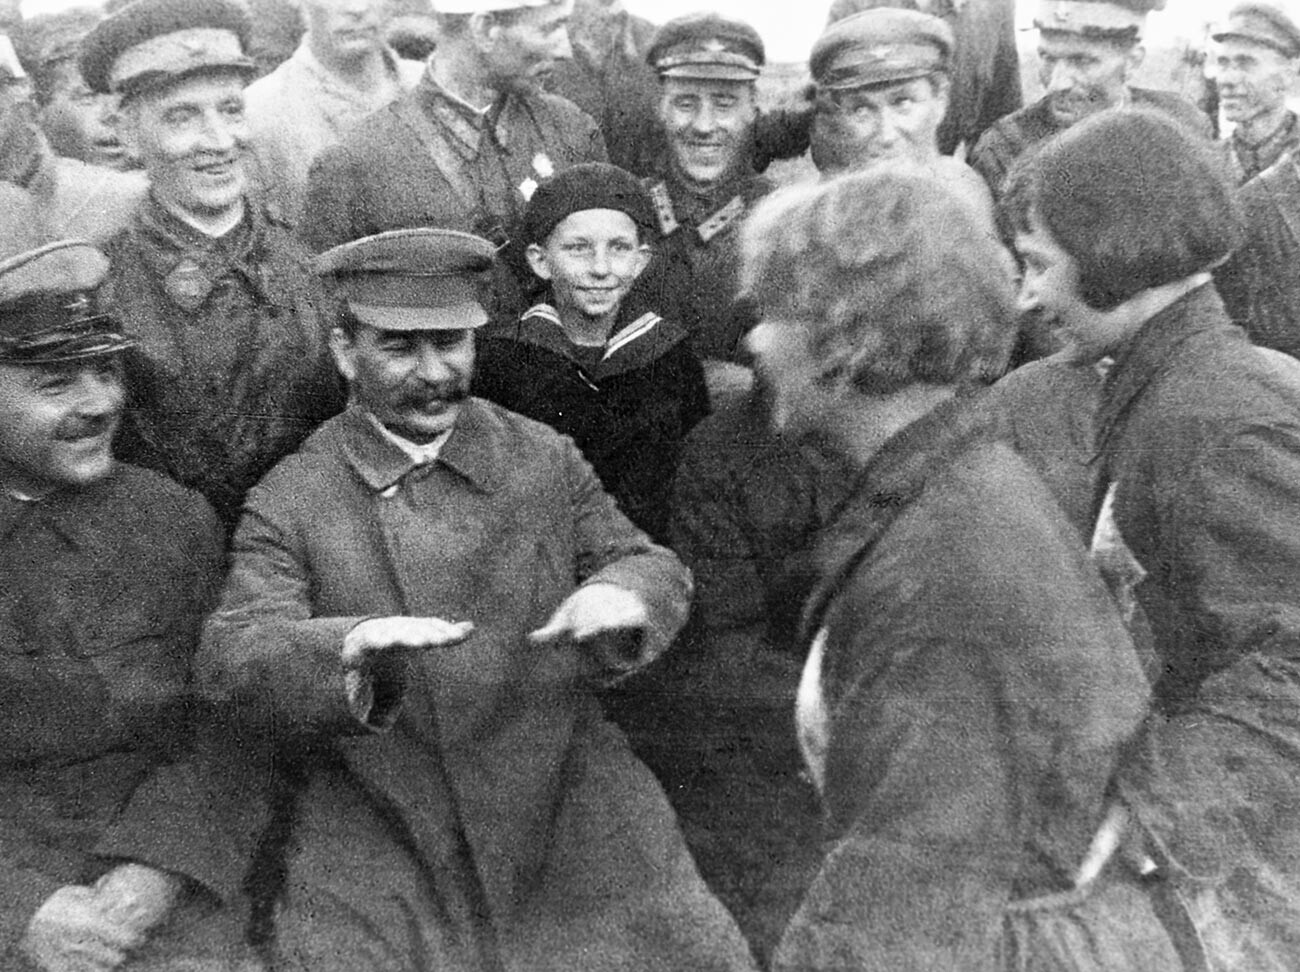 Josef Stalin (kedua kiri) dan Kliment Voroshilov (kiri) berbicara dengan pilot dan pasukan terjun payung di lapangan terbang Tushino